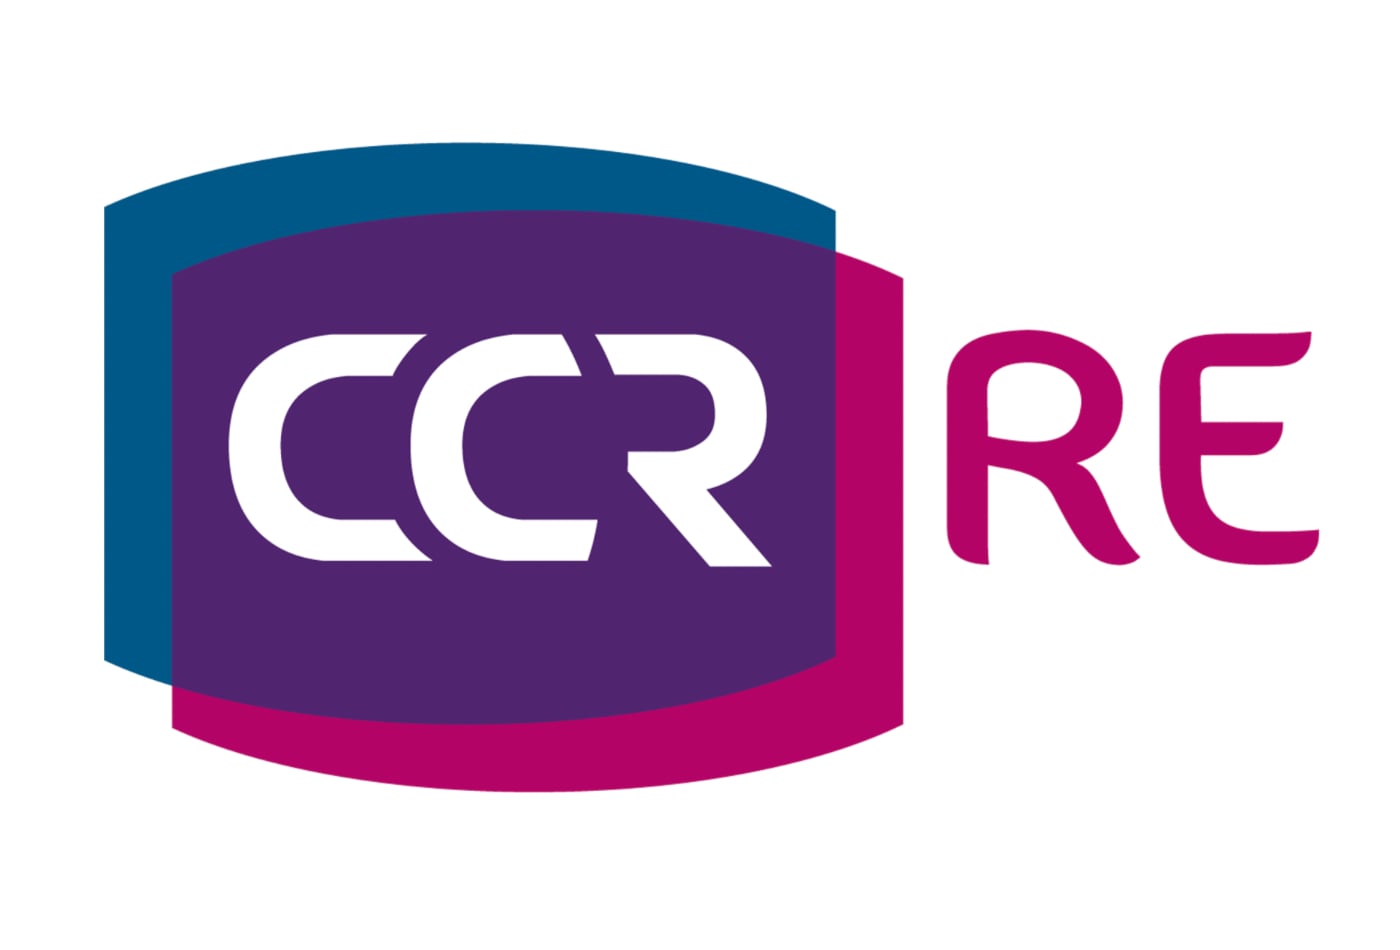 ccr-re-logo-new